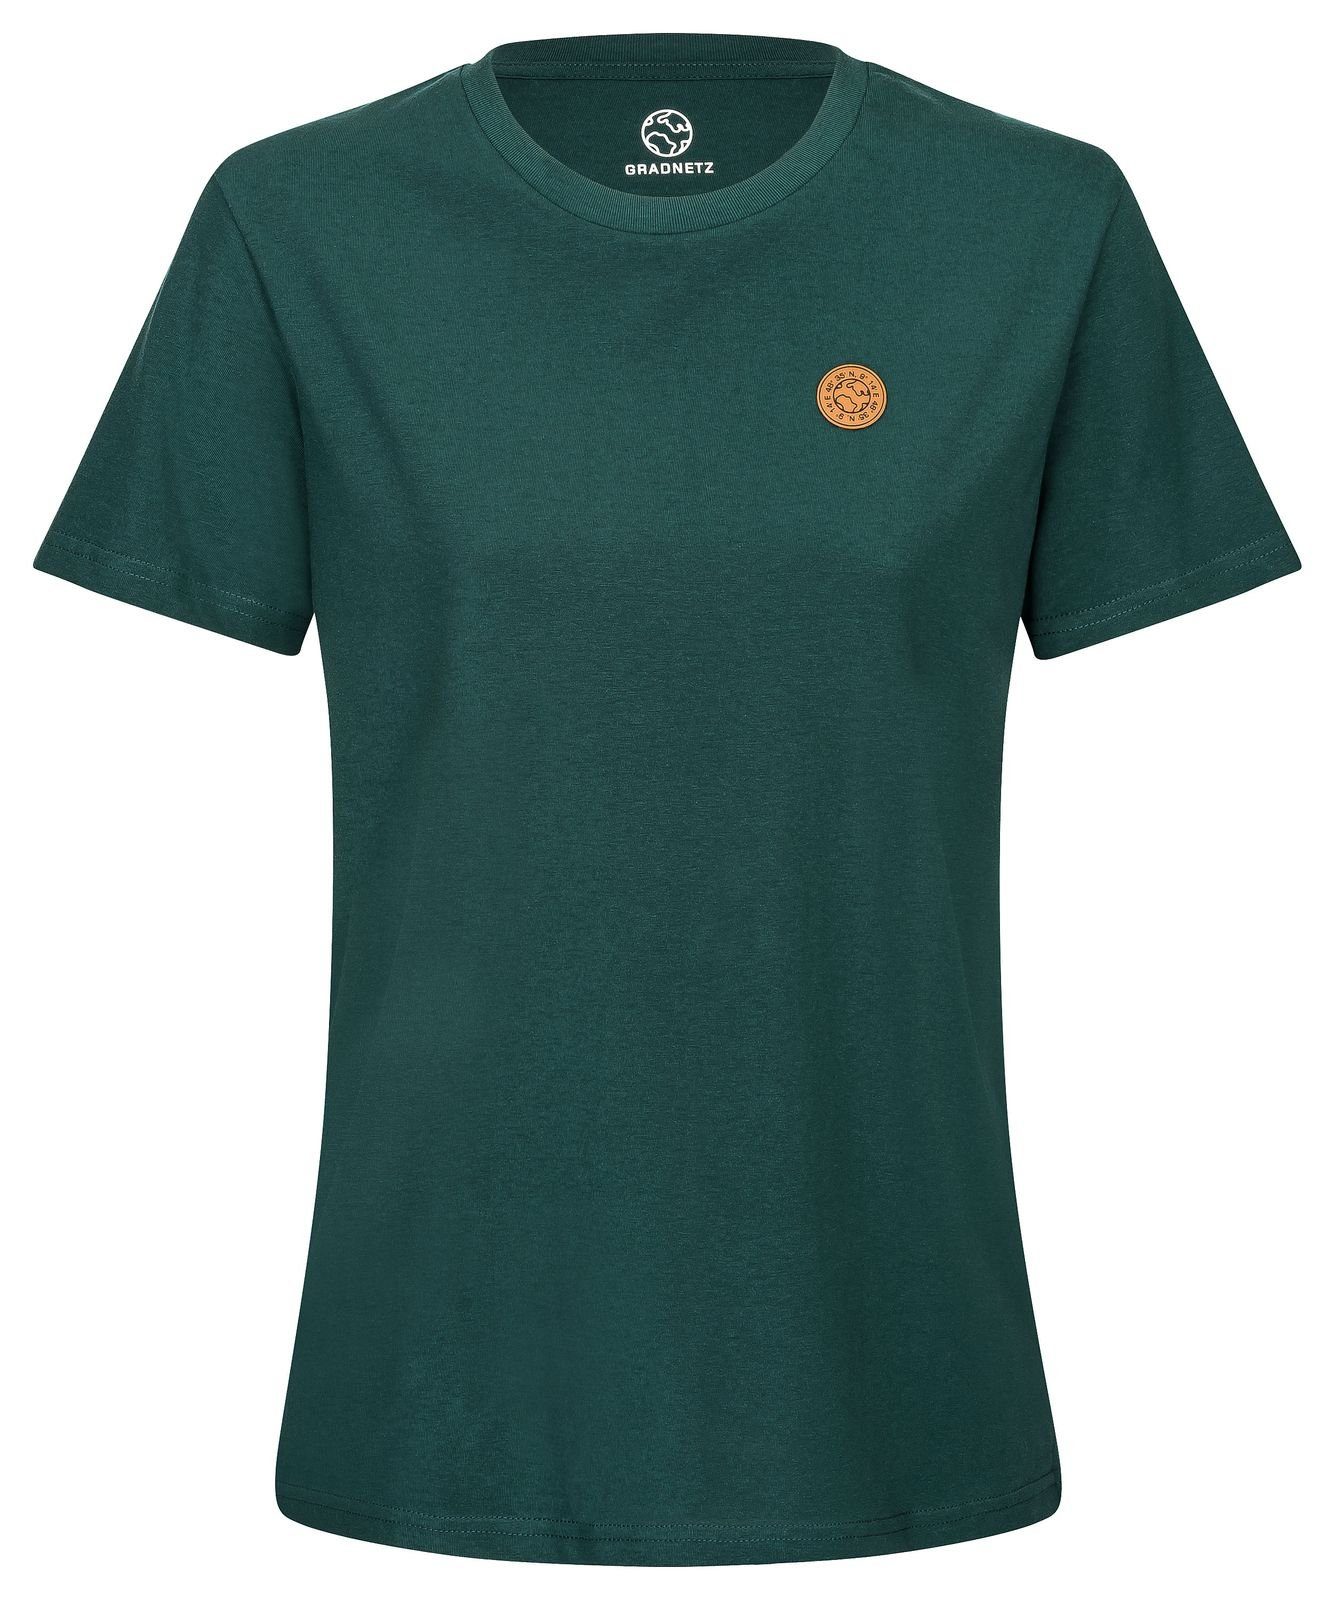 Biobaumwolle T-Shirt unisex basic nachhaltig 100% & fair Gradnetz leather dunkelgrün